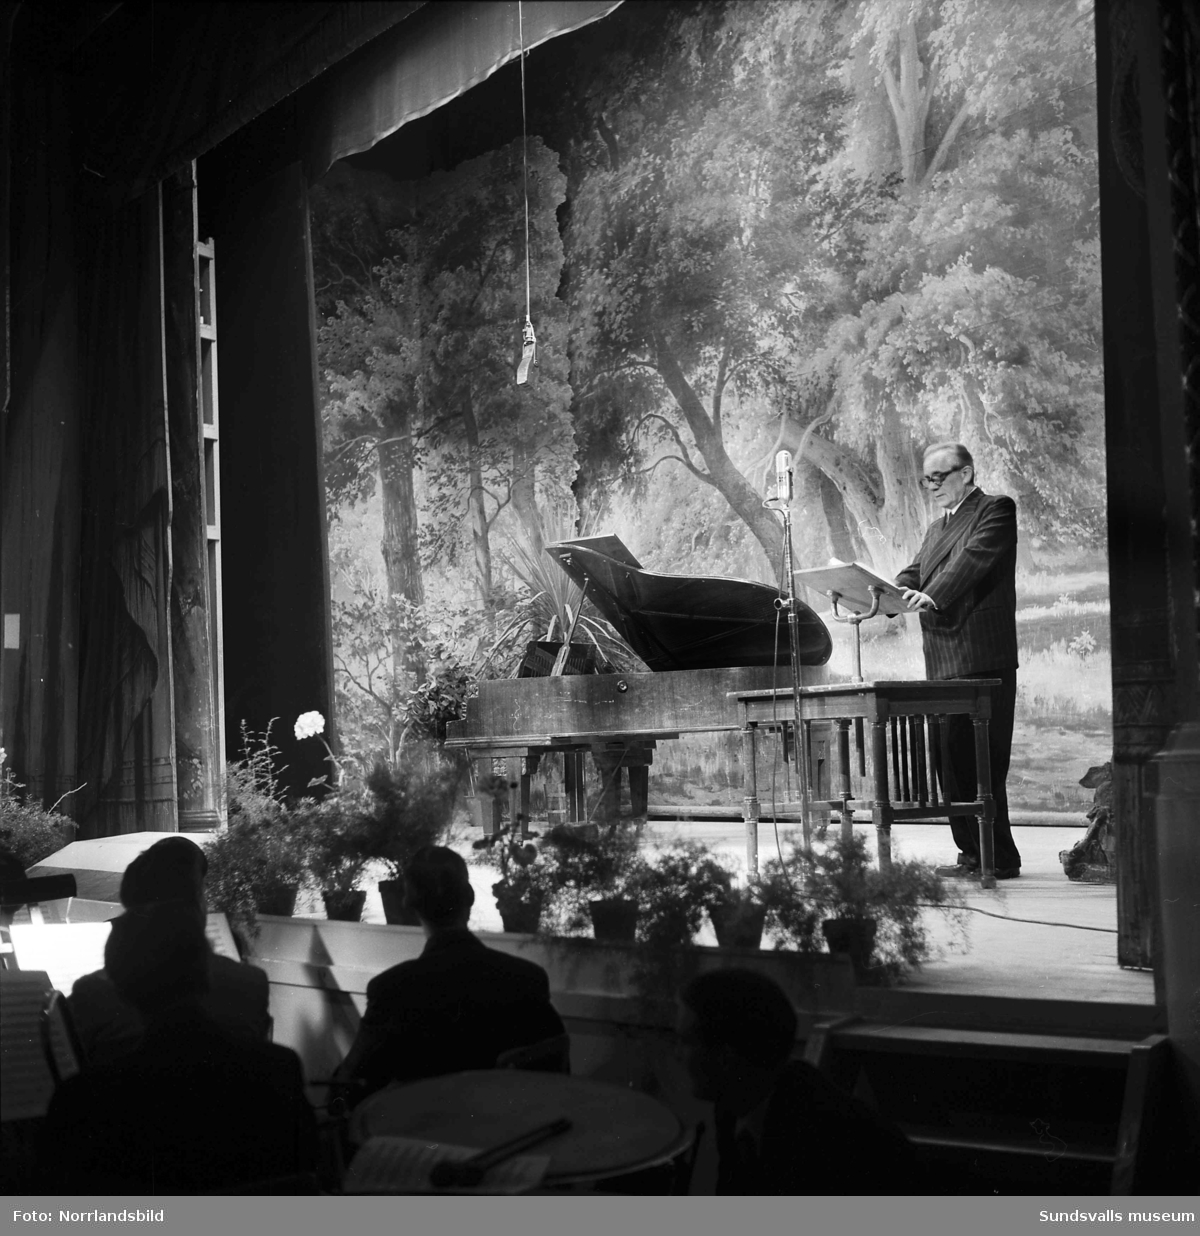 Soare på Sundsvalls teater i samband med Norrlandsförbundets årsmöte 1953.